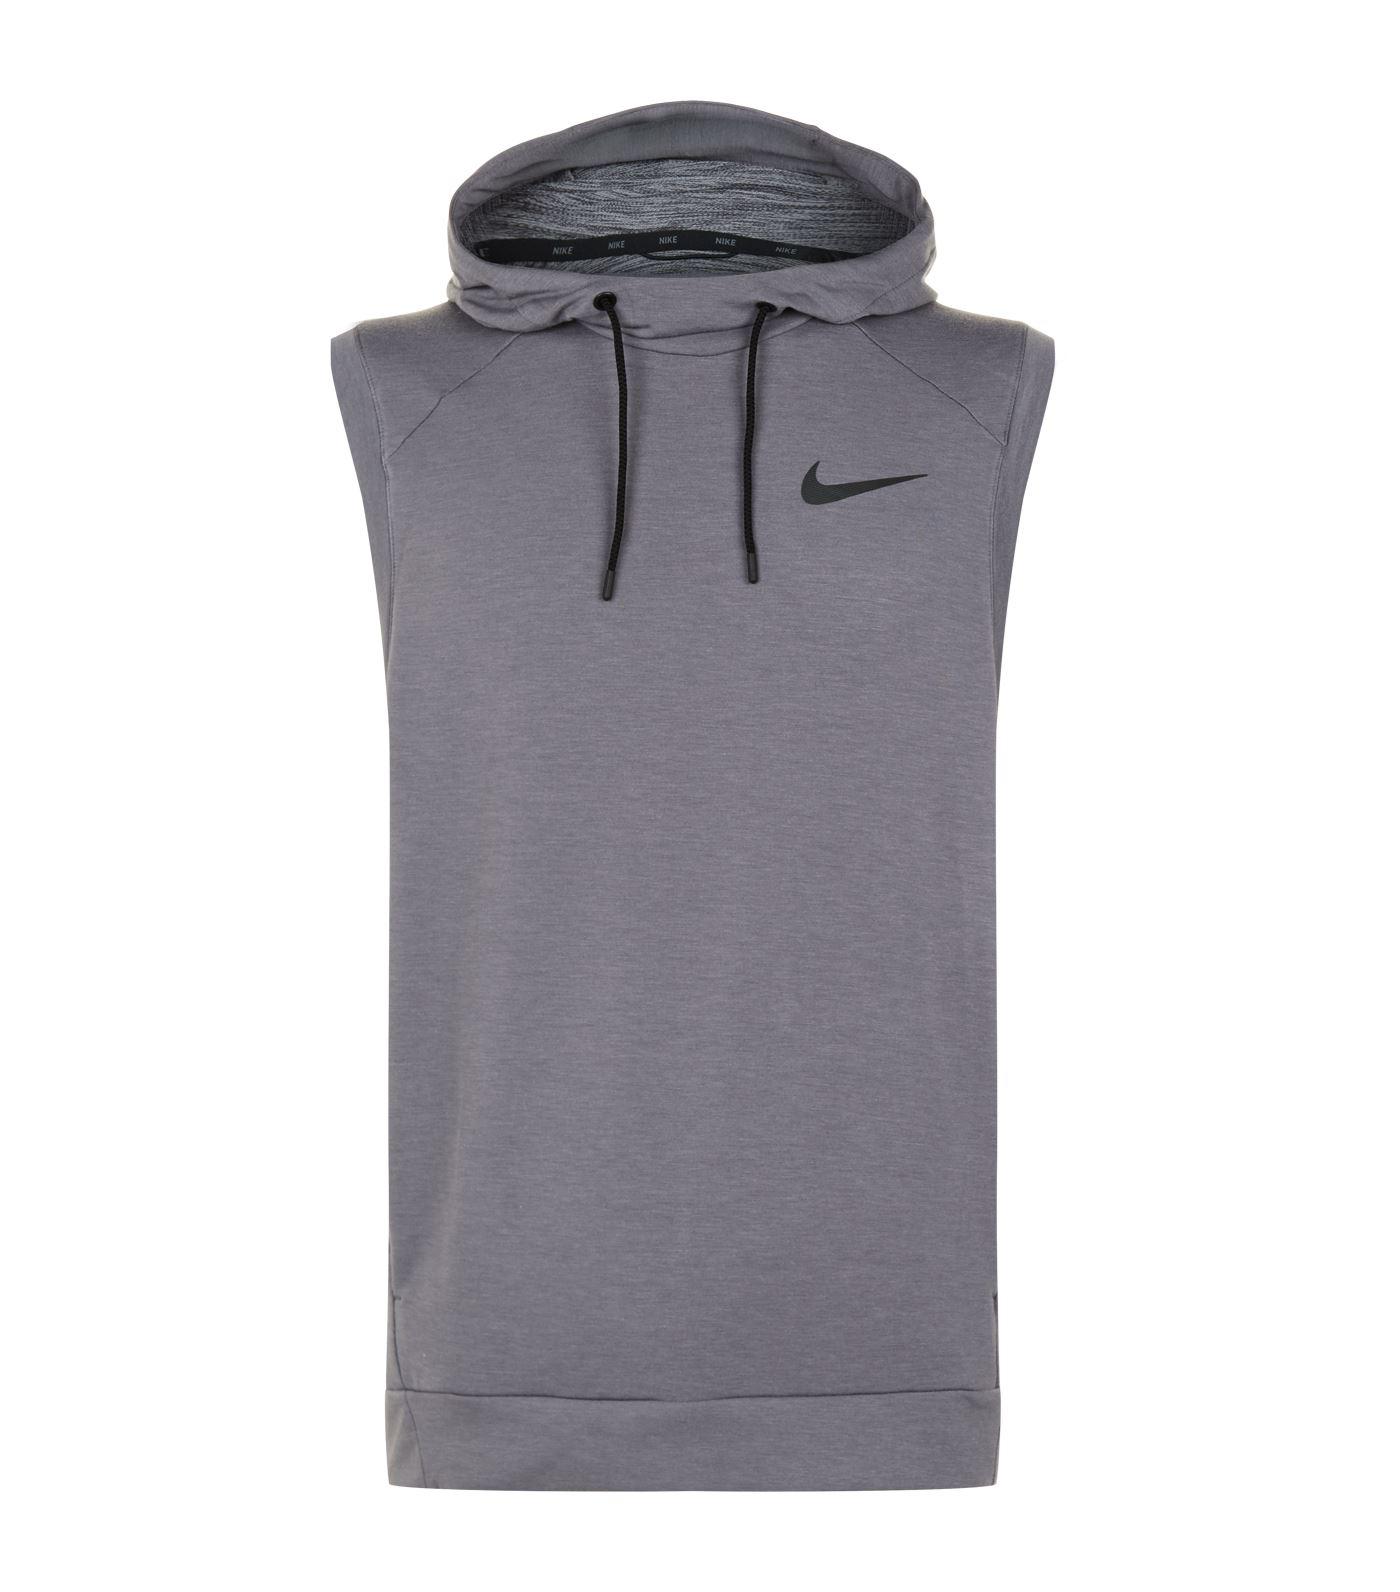 Nike Dri-fit Sleeveless Hoodie in Grey 